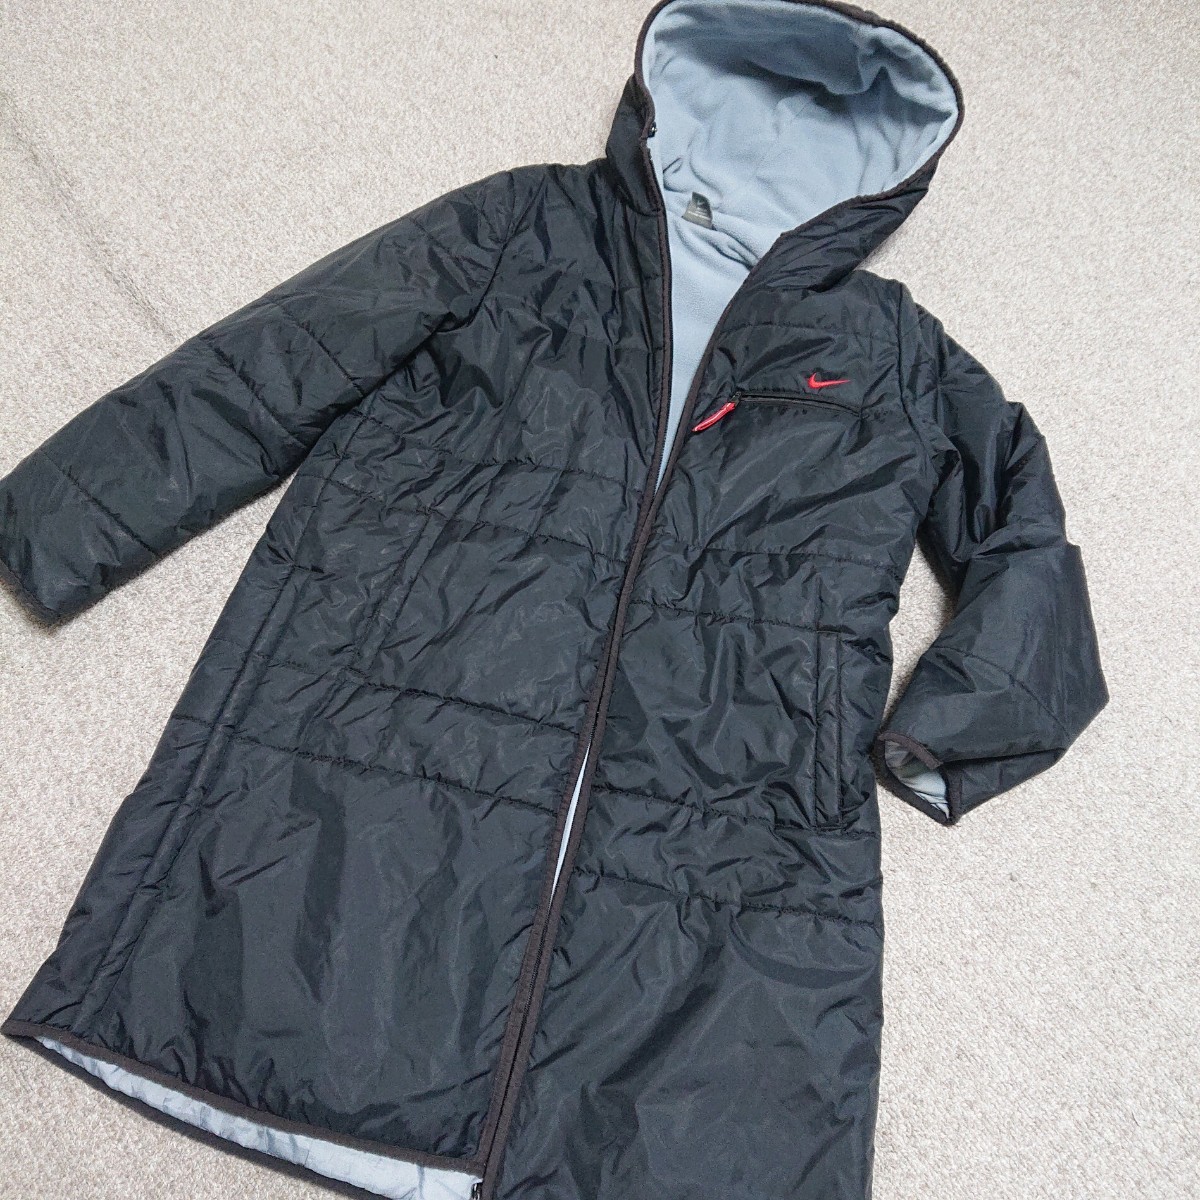  бесплатная доставка Nike мужской L bench пальто чёрный jk071